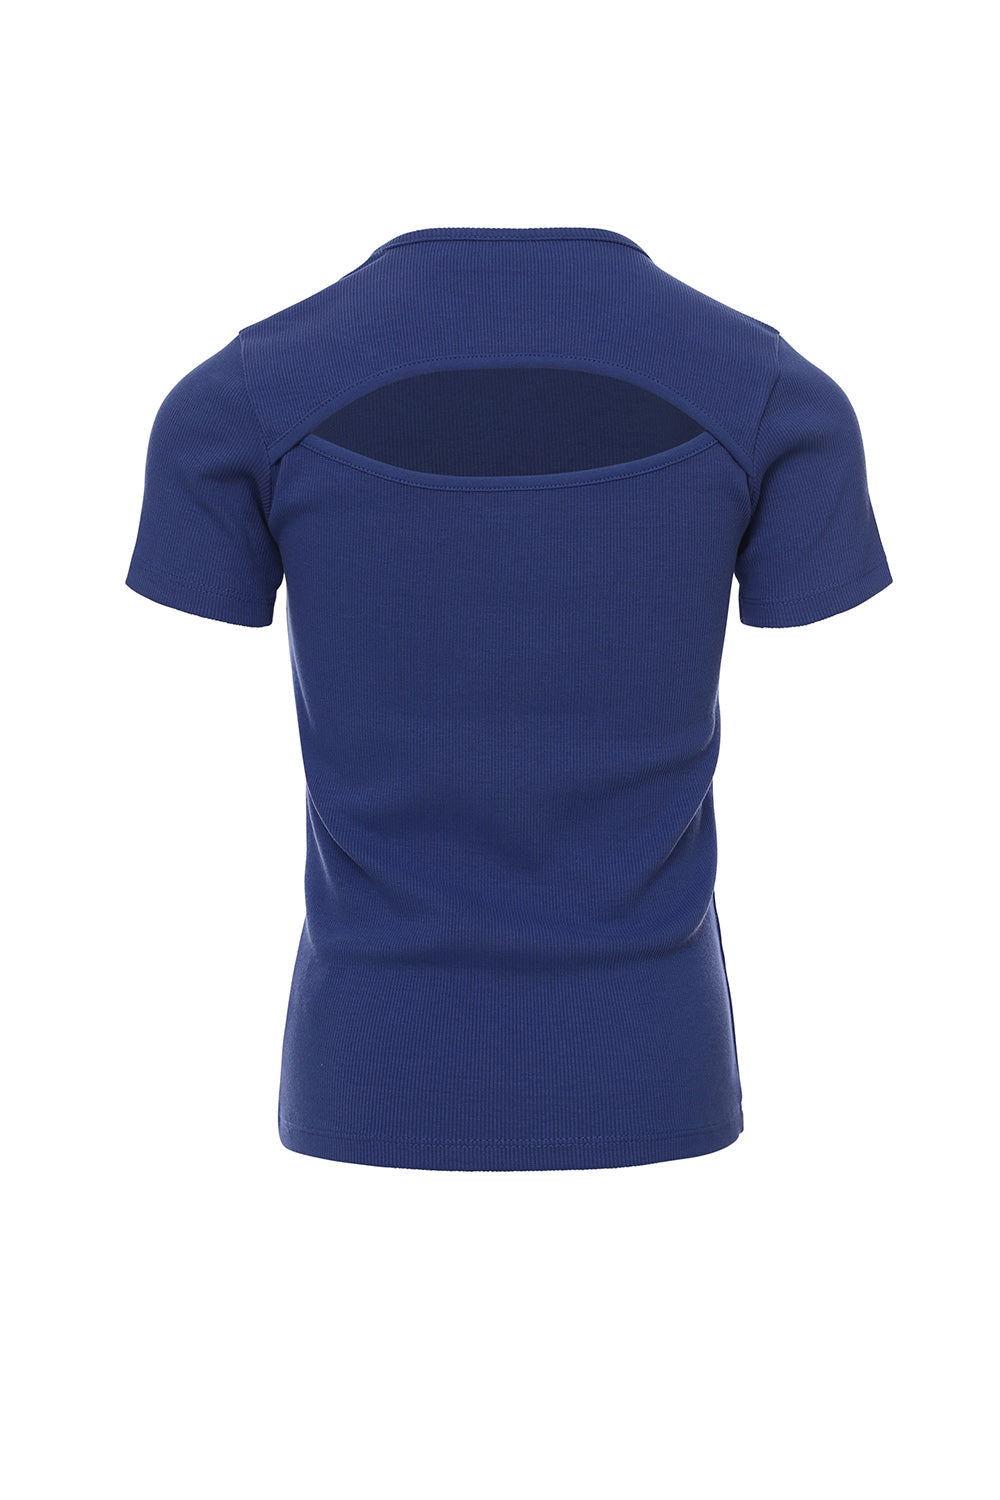 Meisjes Rib T-Shirt van LOOXS 10sixteen in de kleur Voilet blue in maat 176.